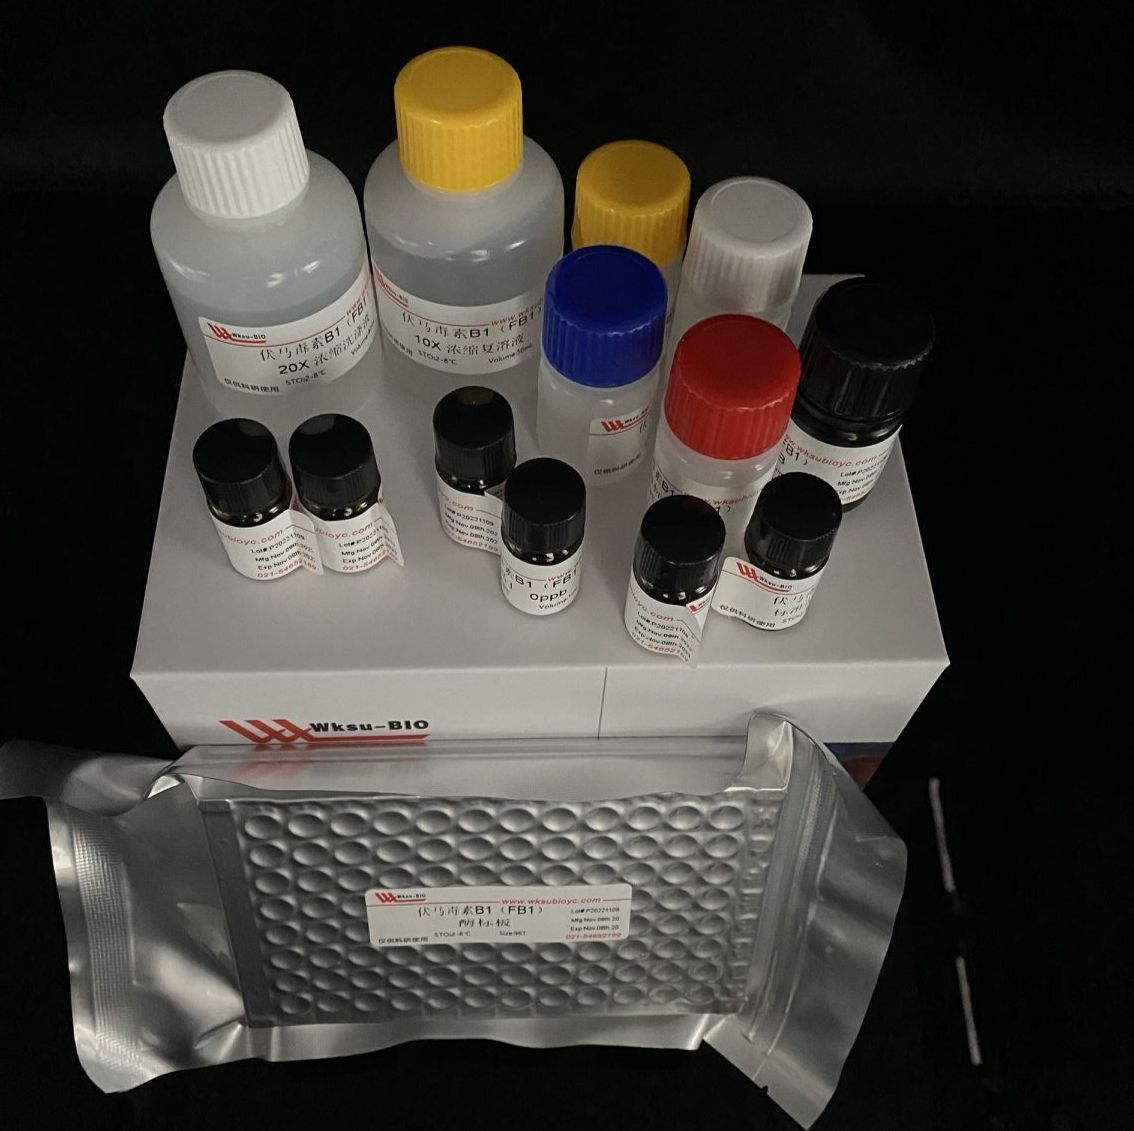 糖化酶/葡萄糖淀粉酶试剂盒,微板法